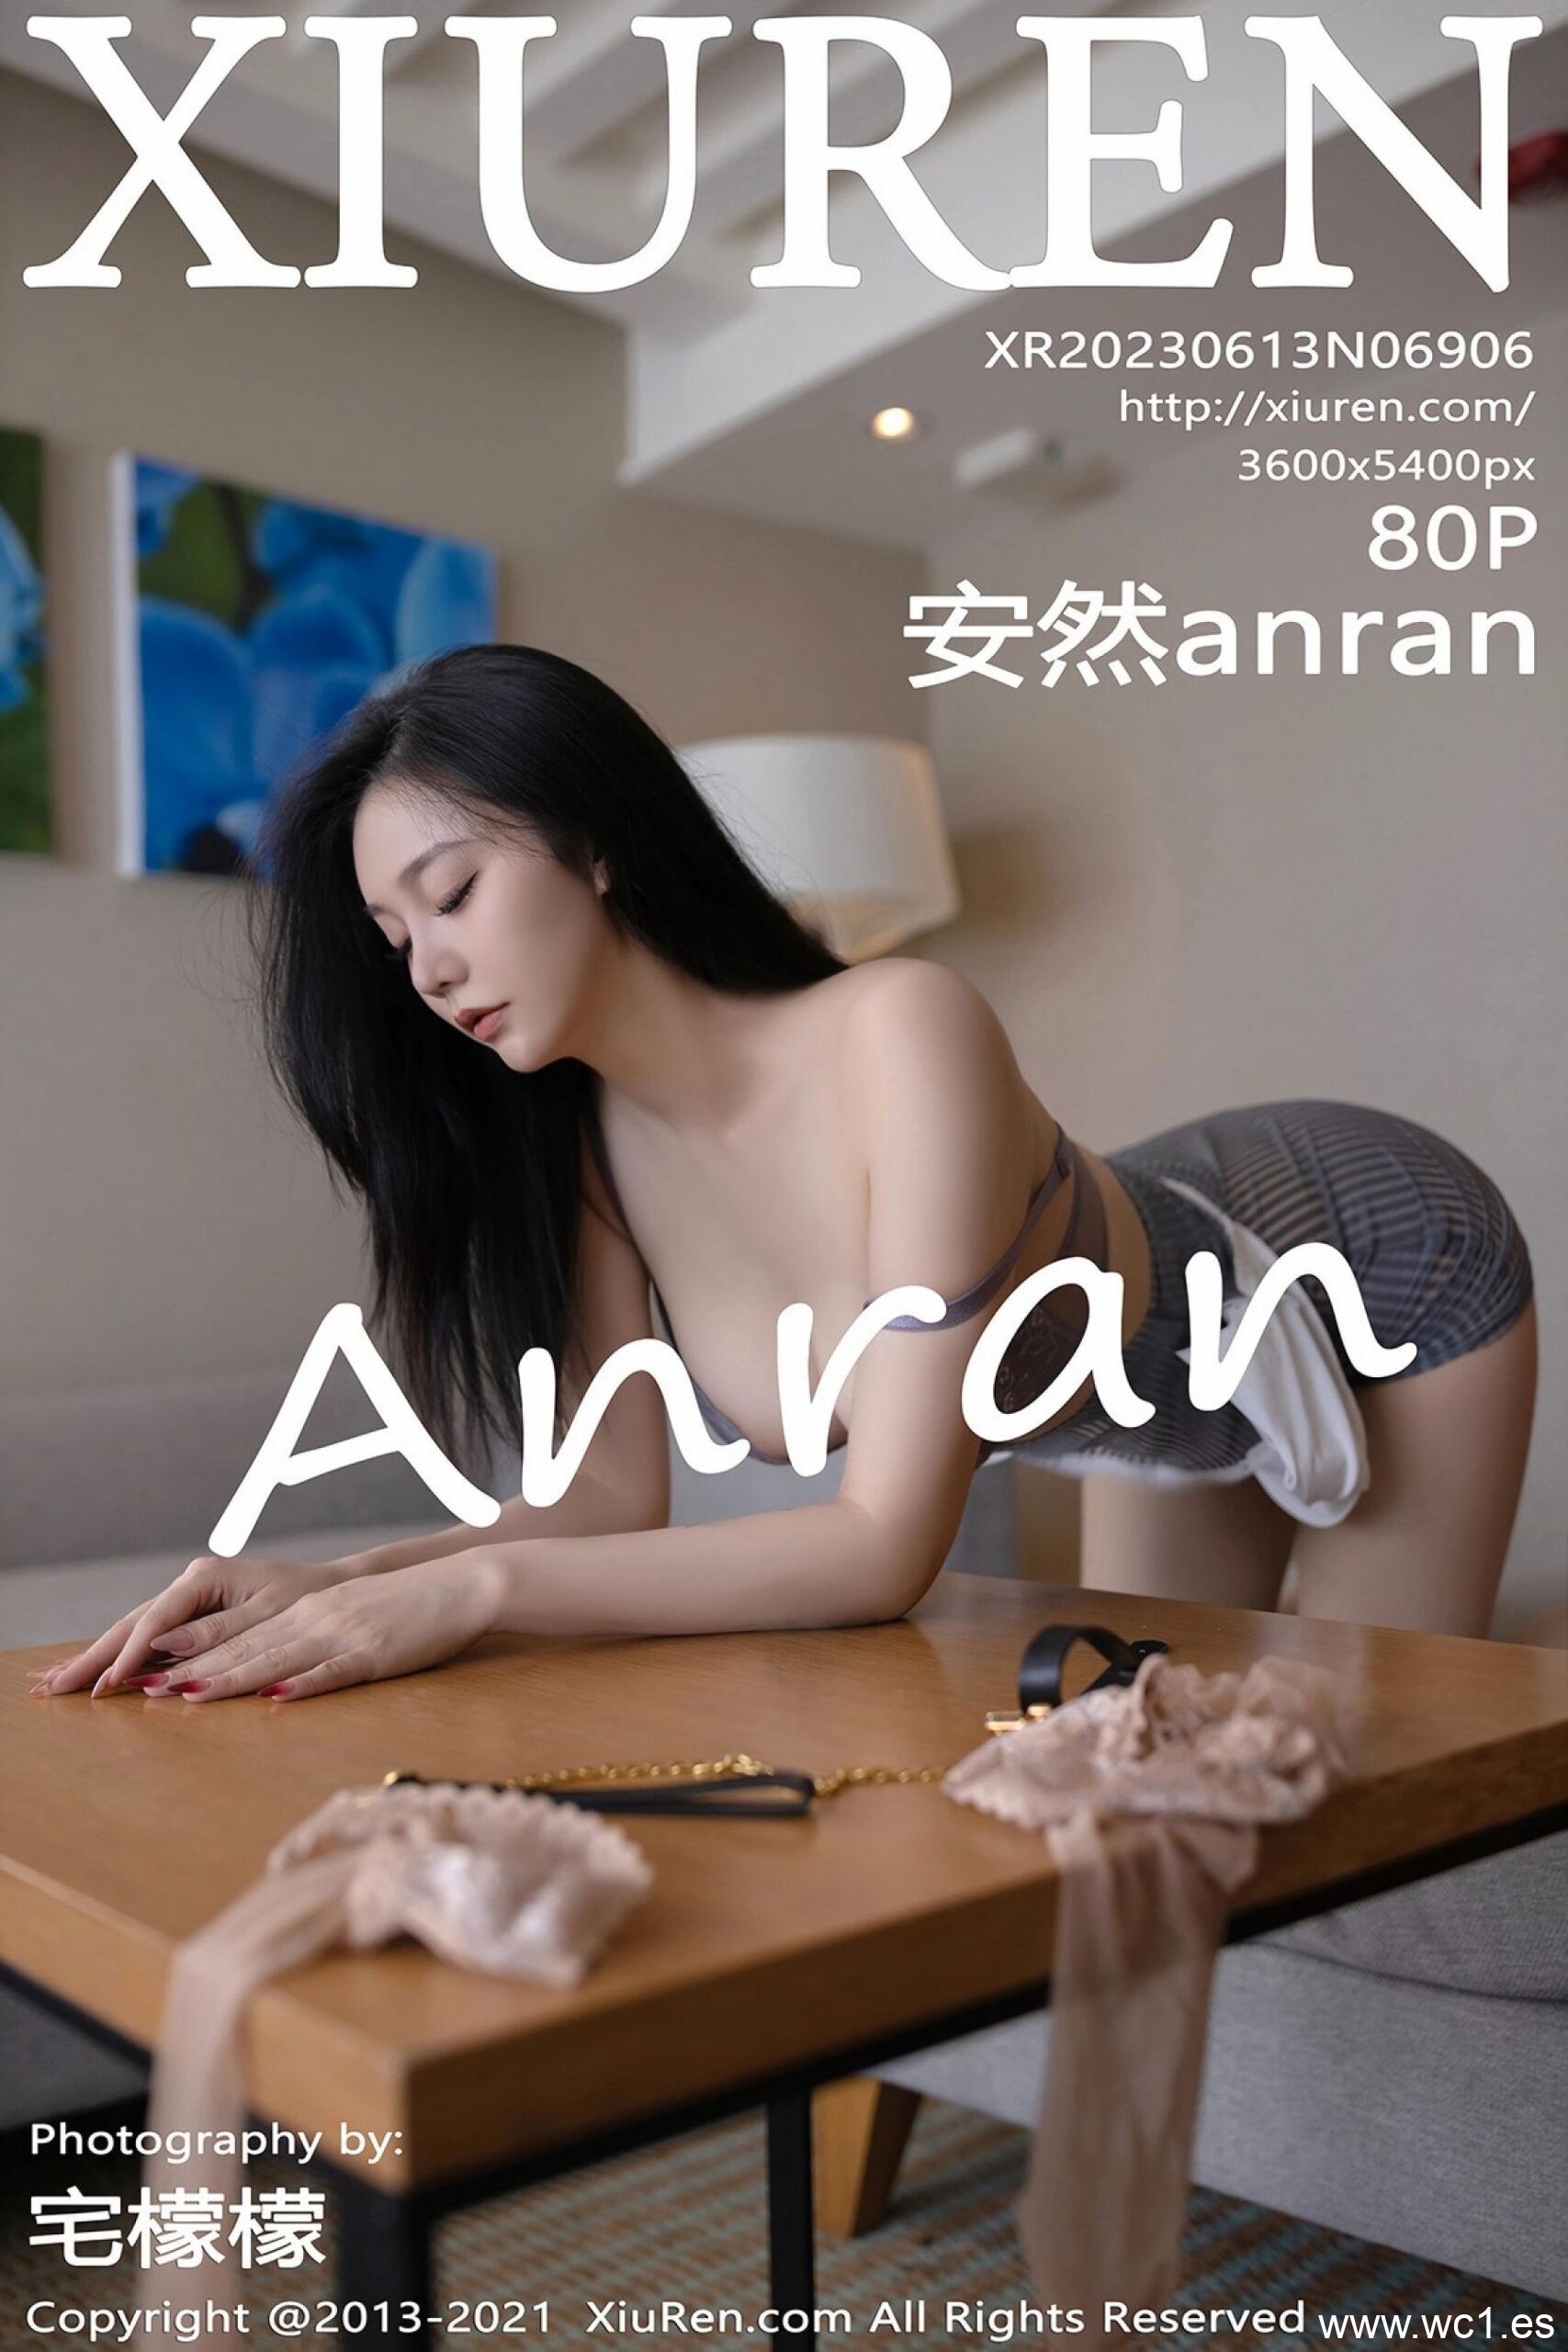 安然anran（6906）